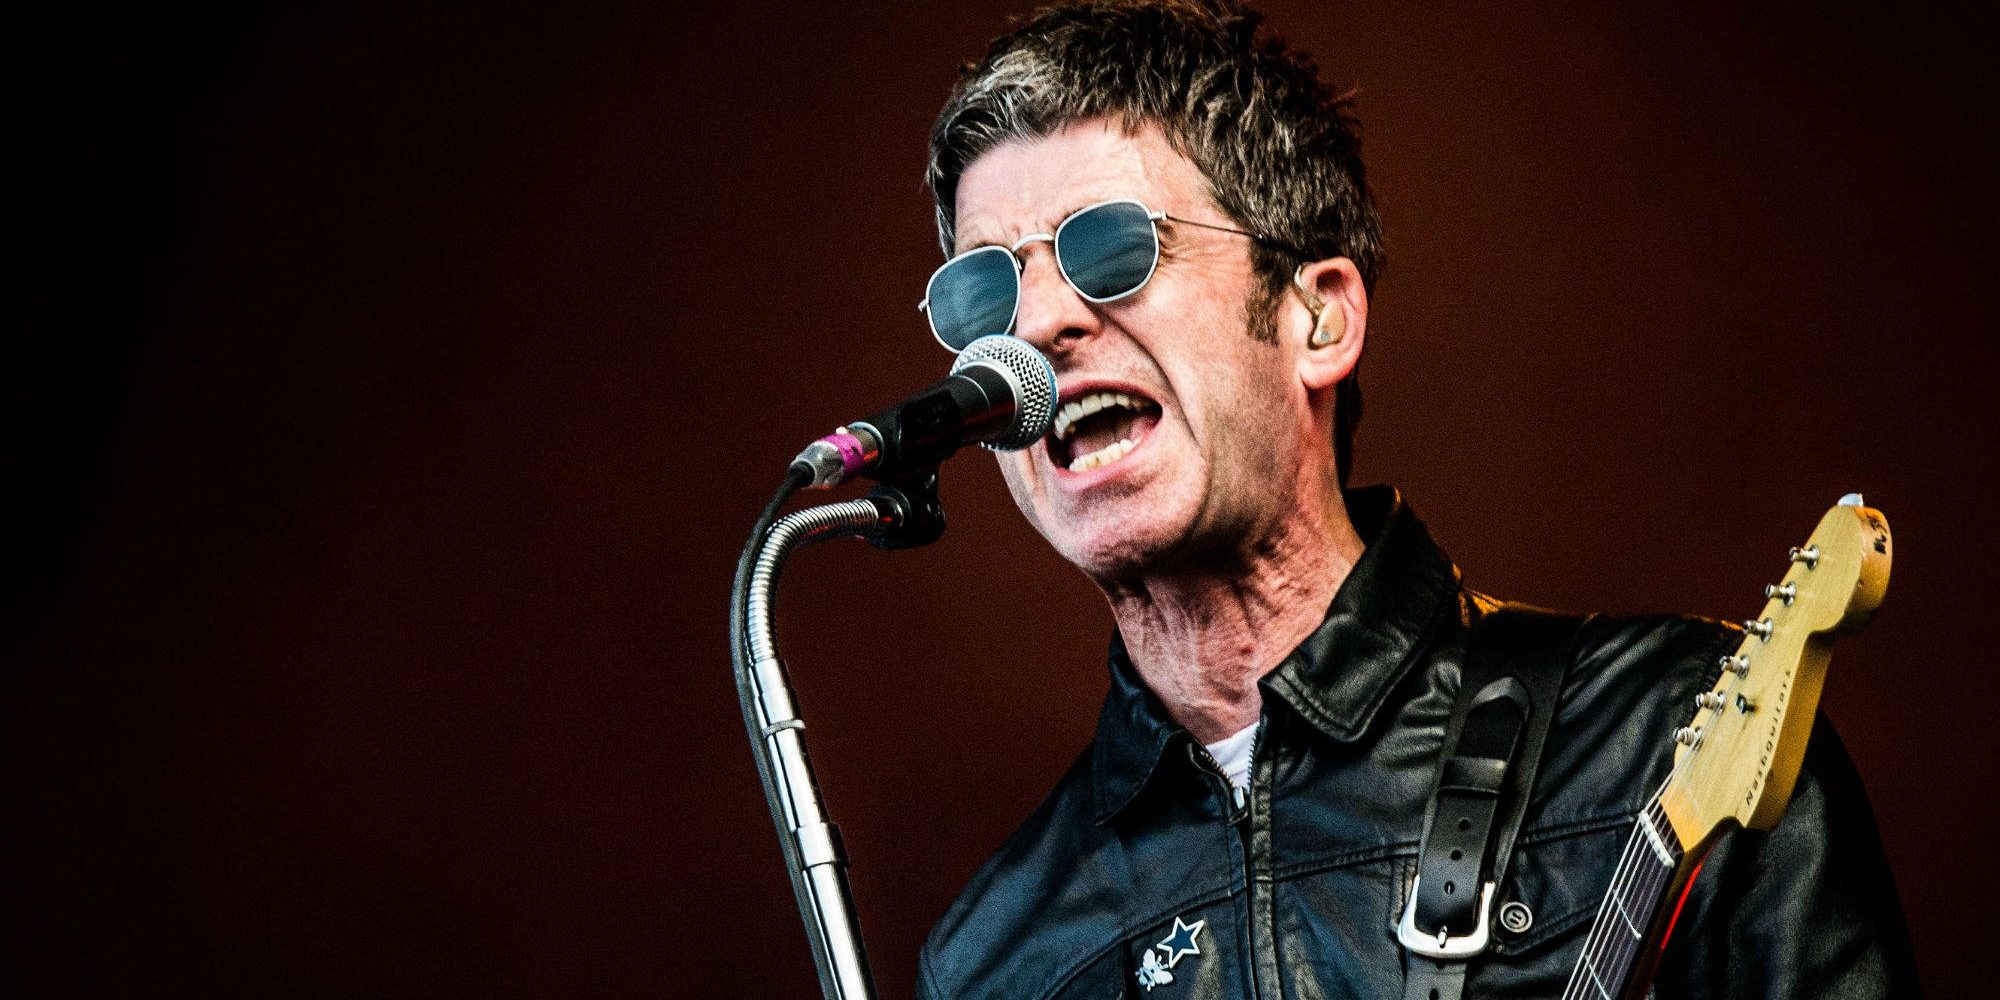 Noel Gallagher no tiene dudas: este es “el disco más influyente de la historia”